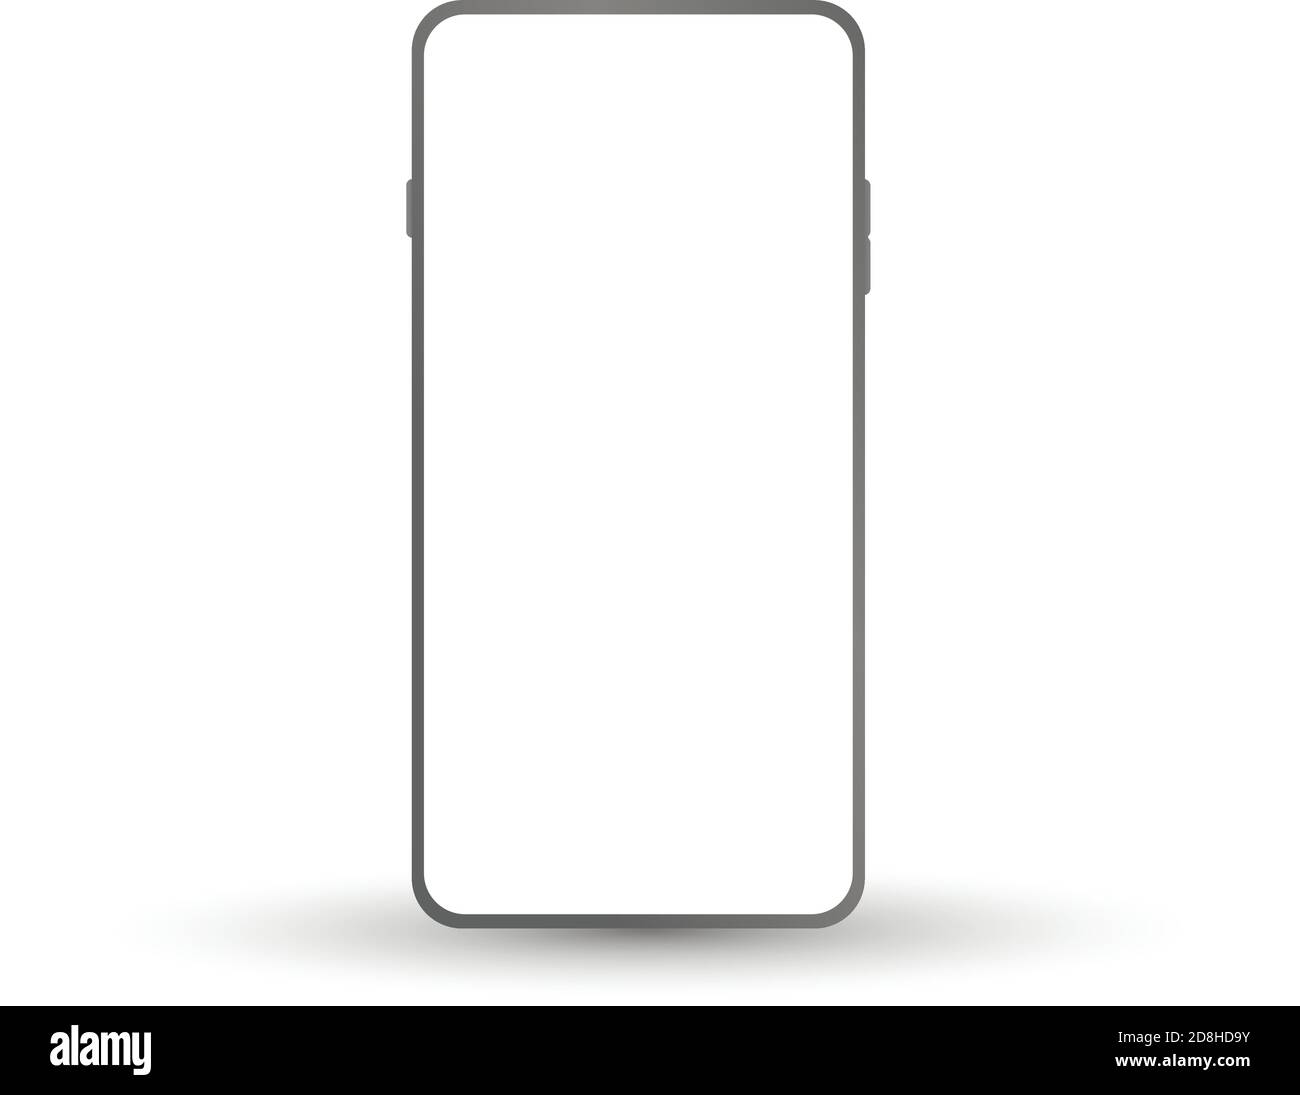 Smartphone-Modell mit leerem Bildschirm. Vektor rahmenlose Smartphone, Handy isoliert auf weißem Hintergrund. Stock Vektor